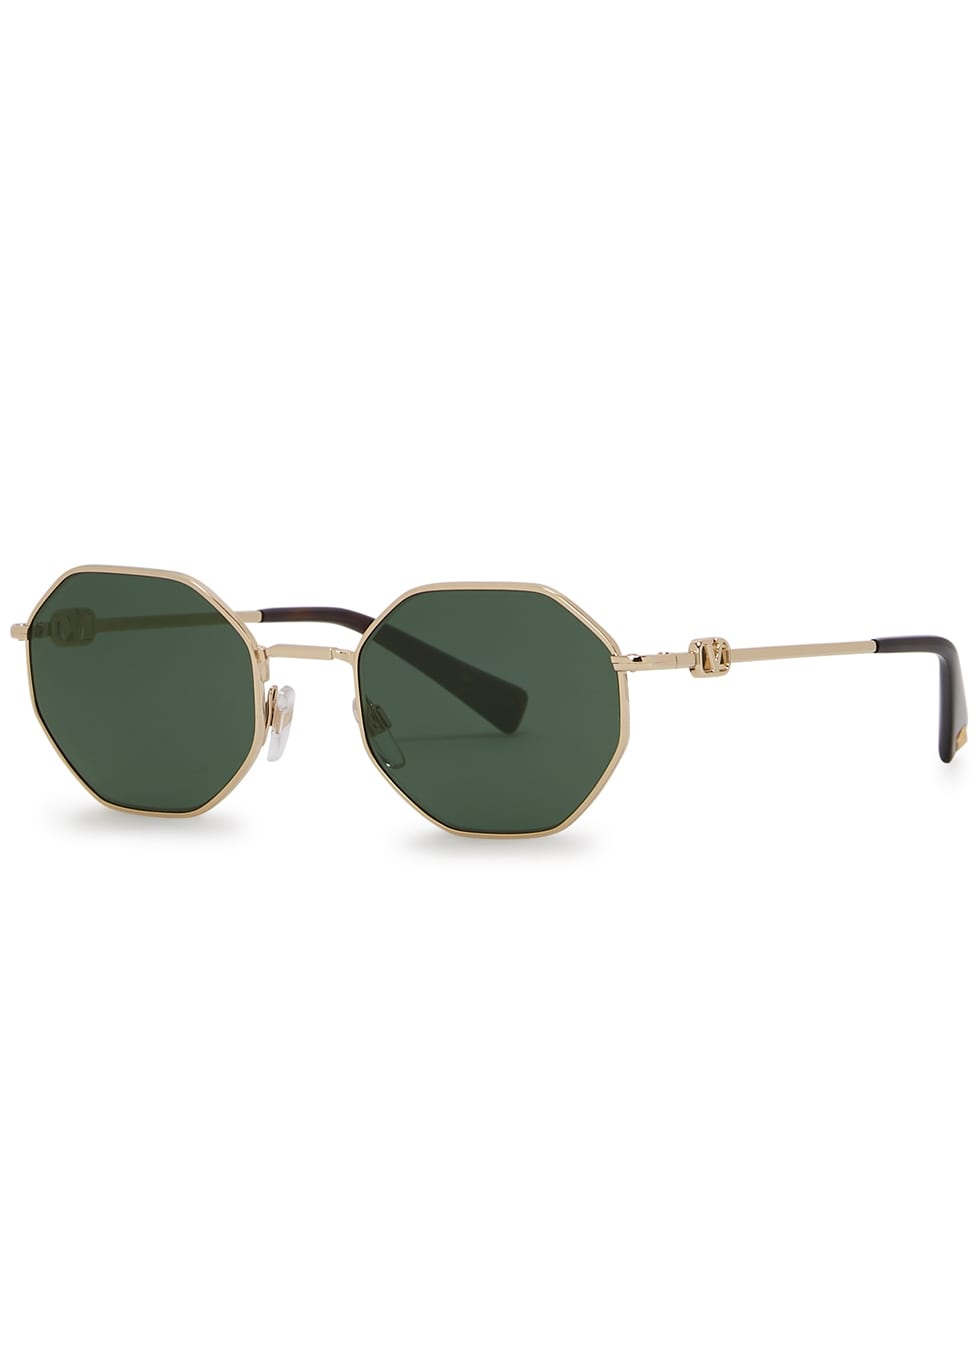 gold tone oval frame sunglasses